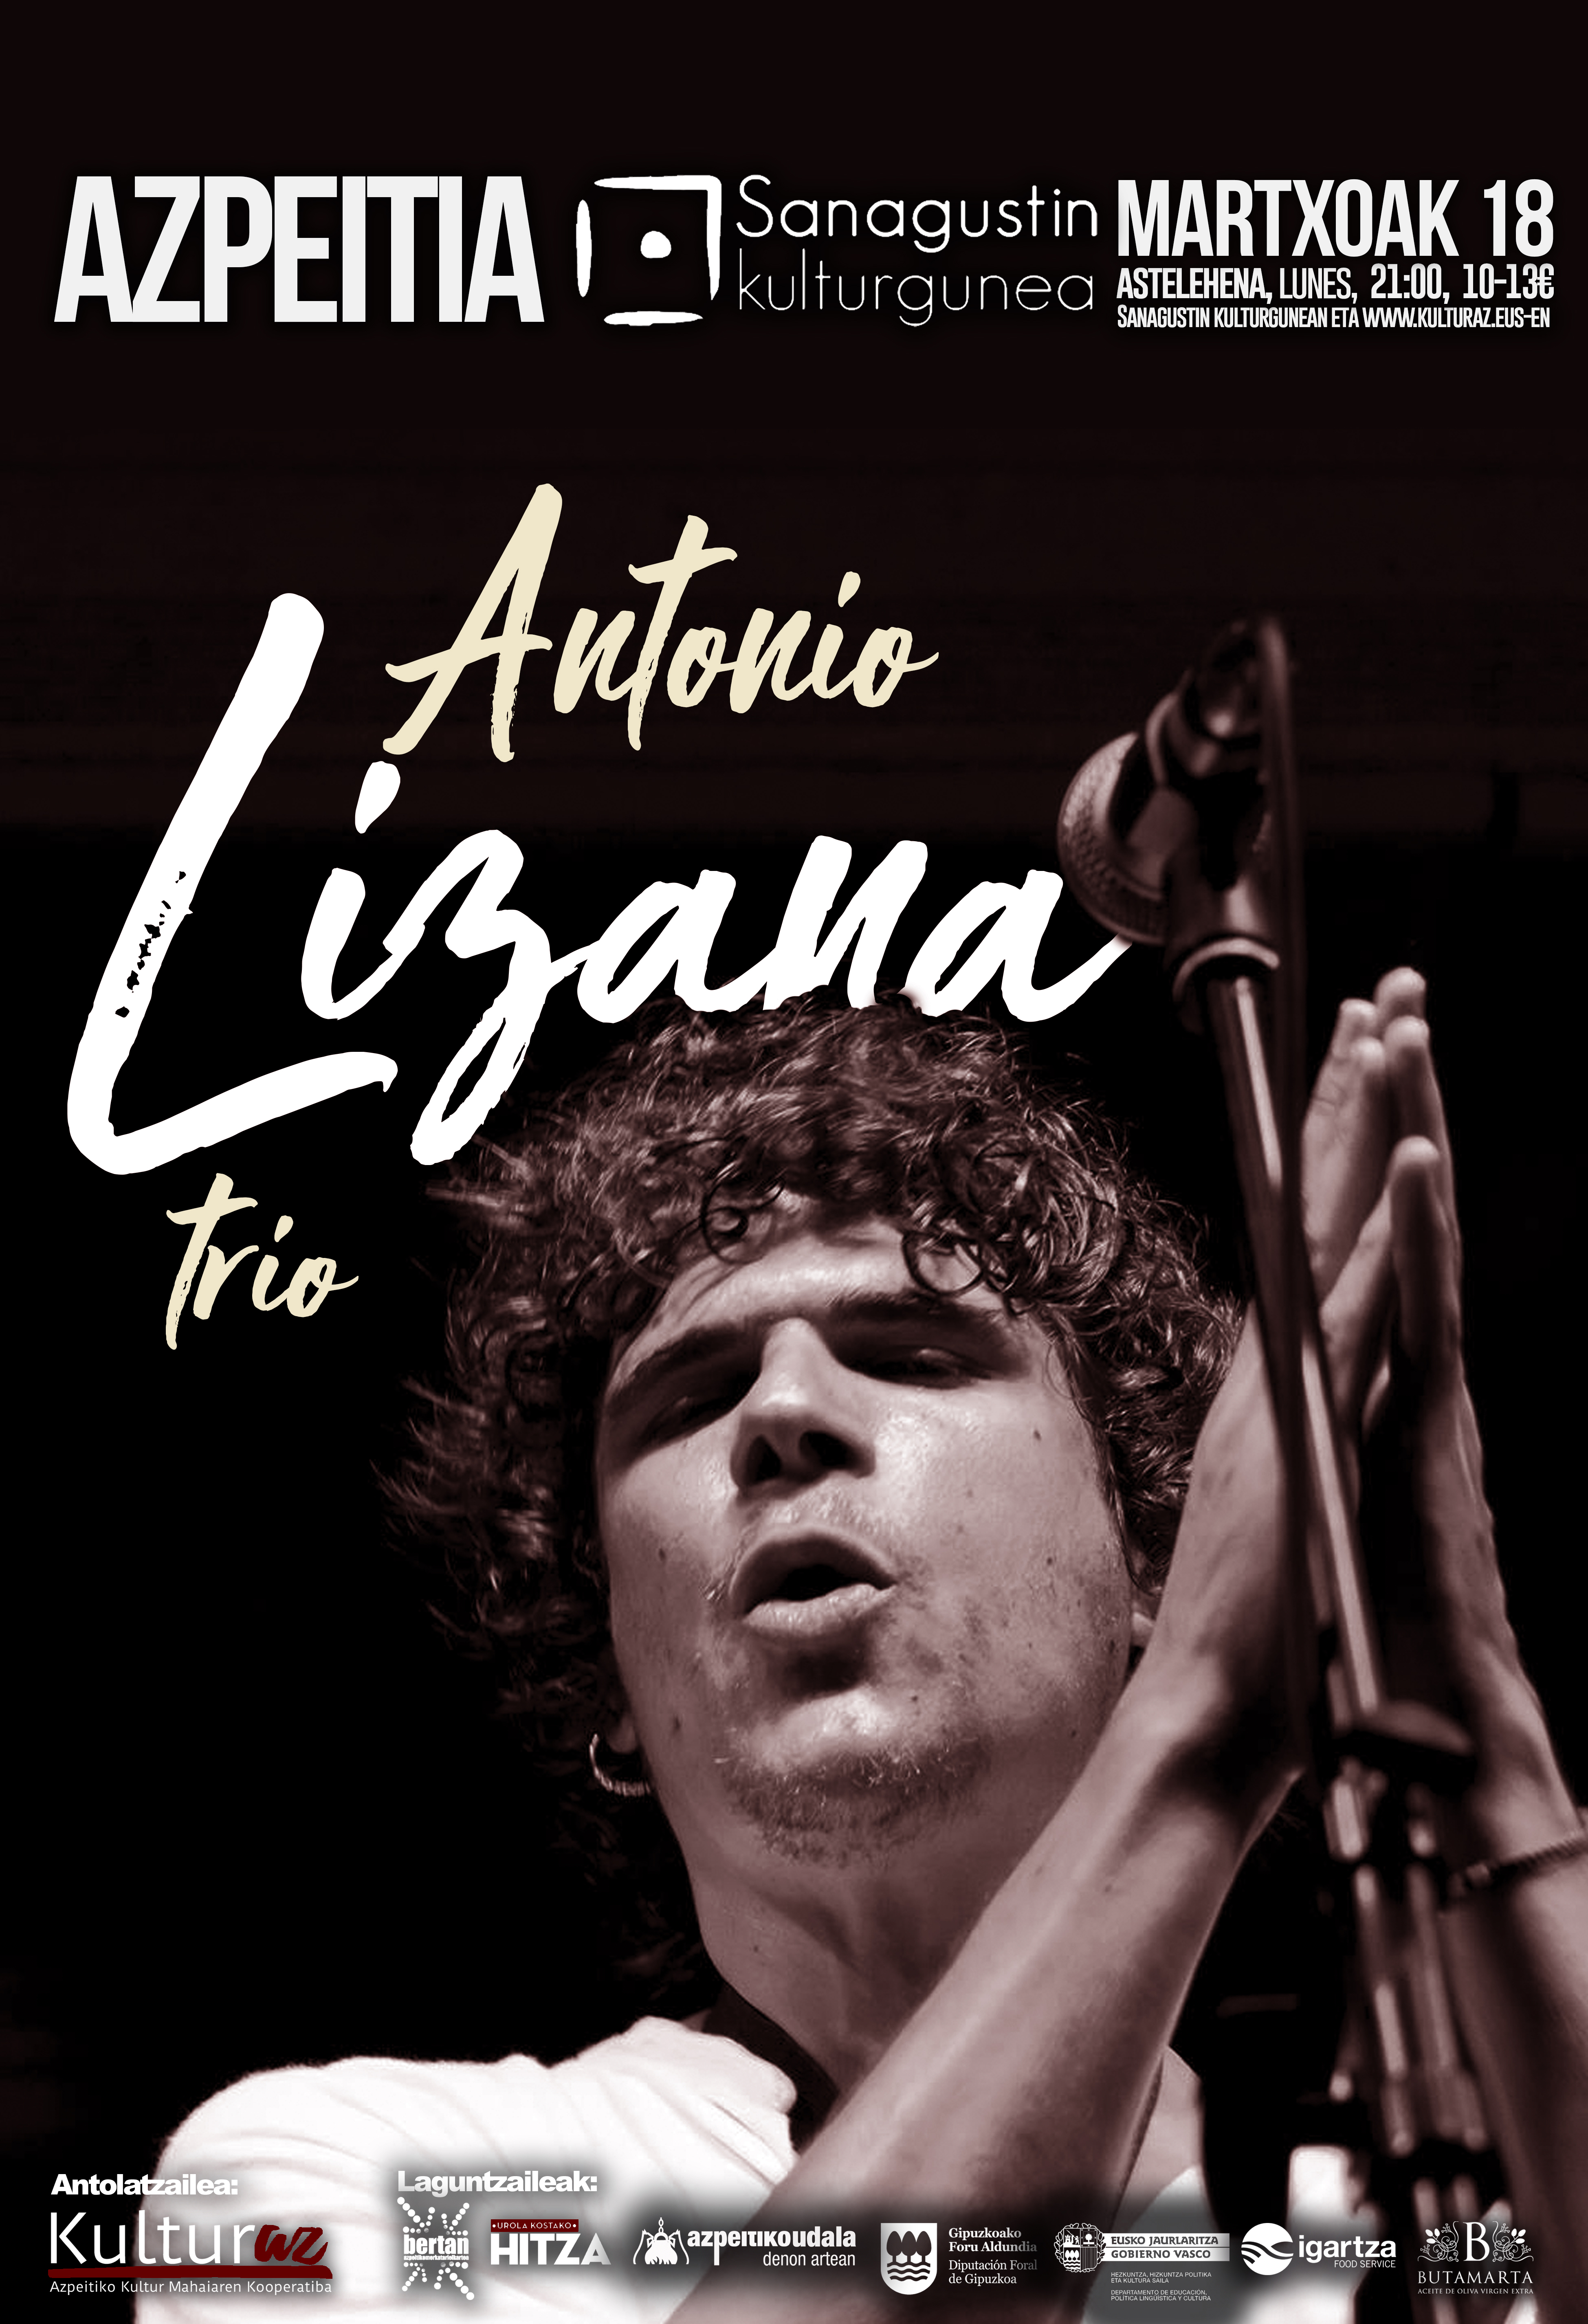 Antonio Lizana Trio